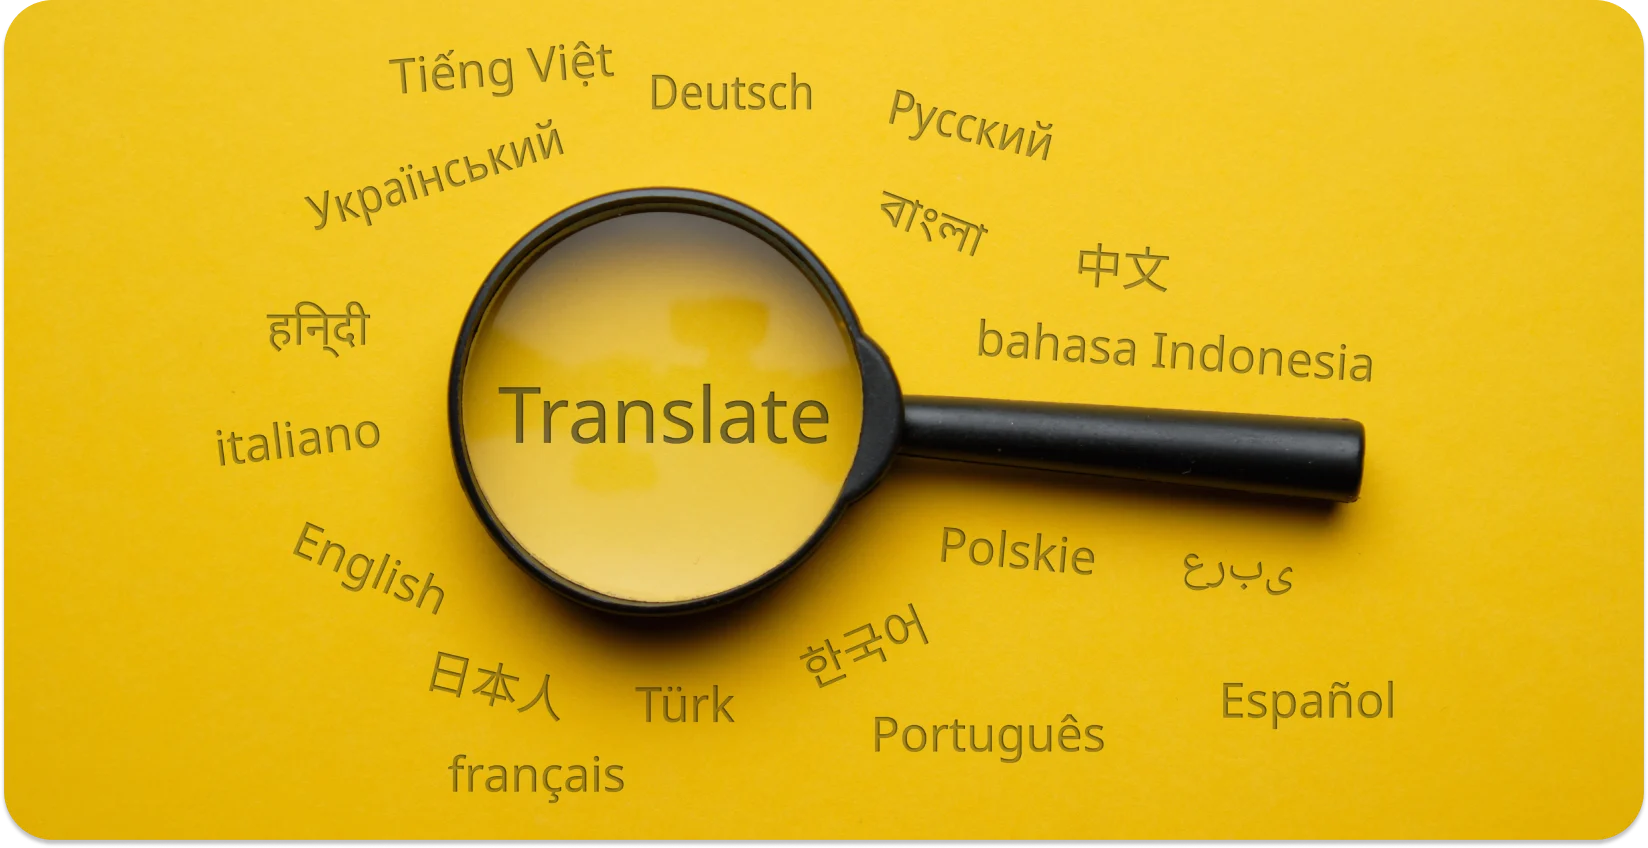 Lente d'ingrandimento che evidenzia "Tradurre" tra le varie lingue, simboleggiando la conversione linguistica.